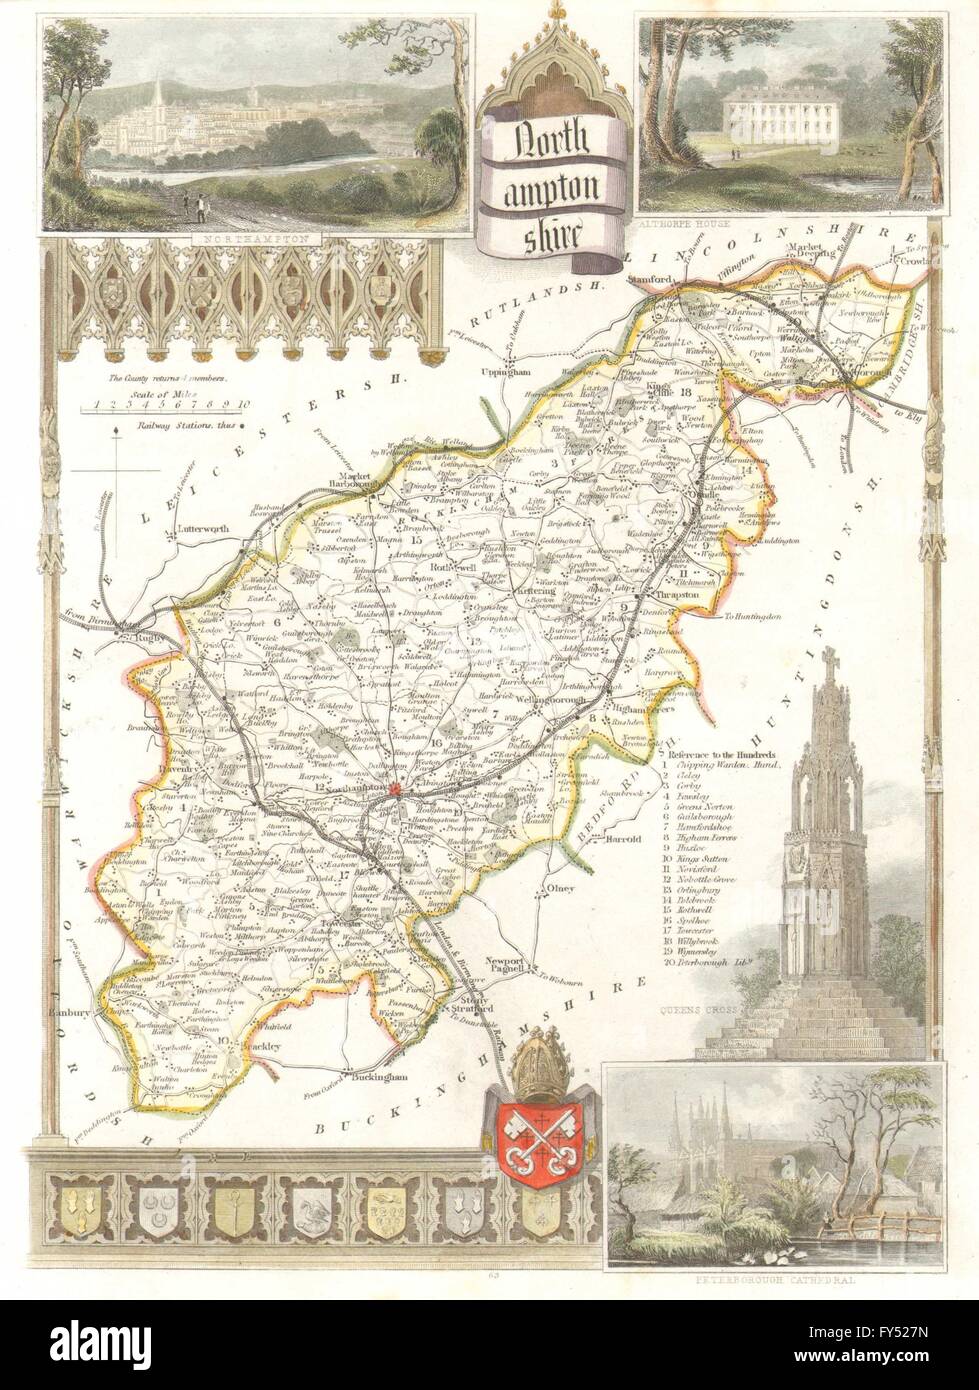 Antique Northamptonshire county carte colorés à la main par Thomas Moule, c1840 Banque D'Images